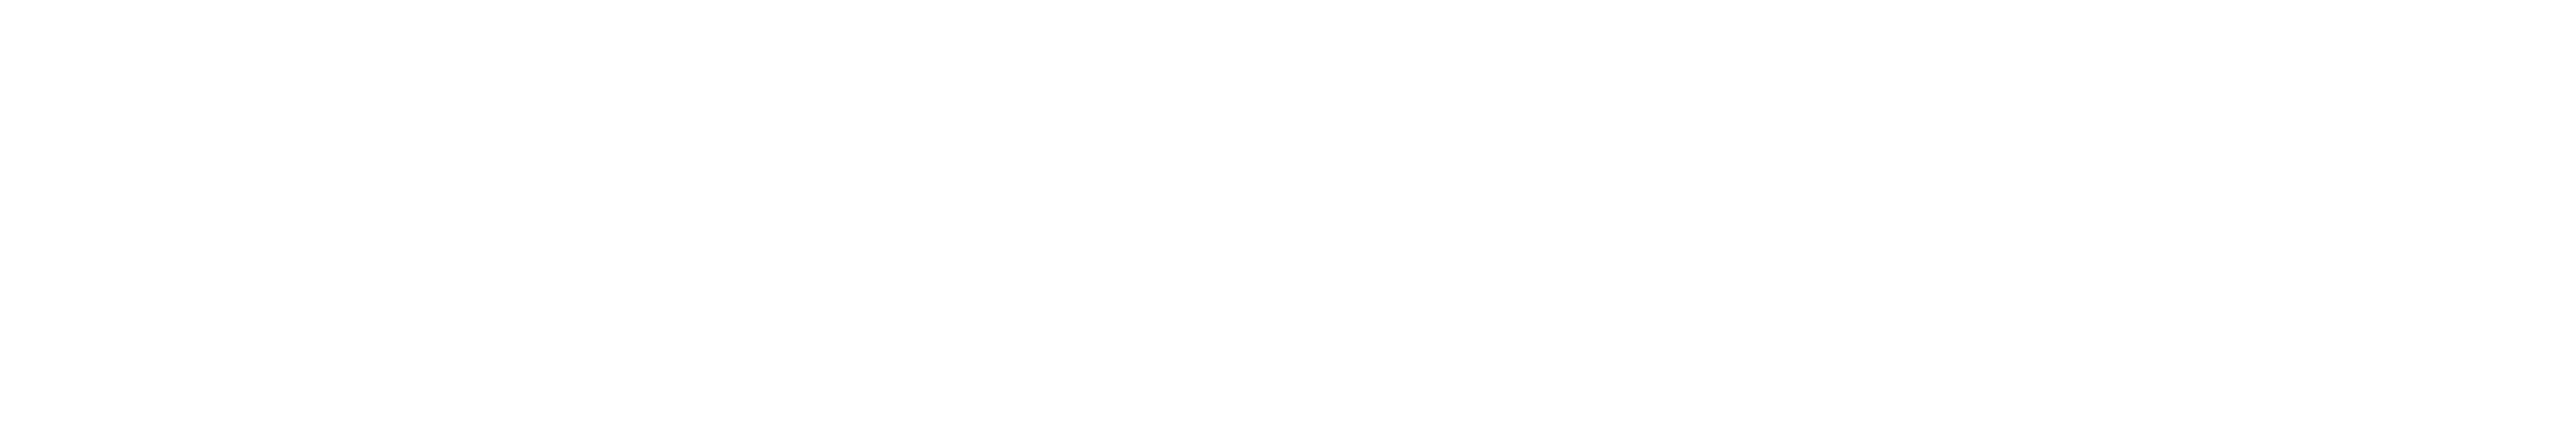 lady1vn